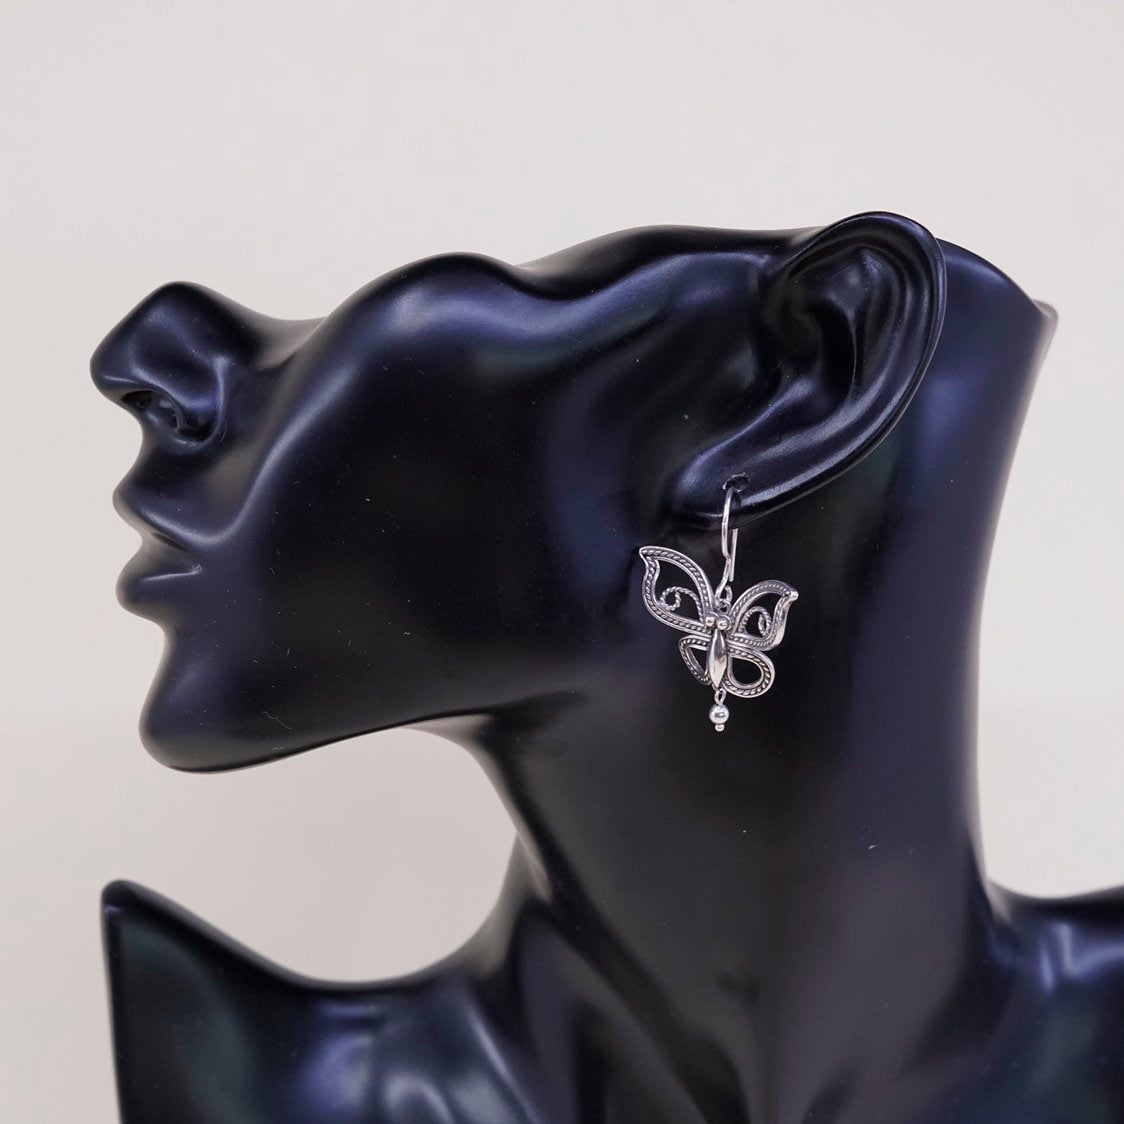 vtg BJ sterling silver handmade earrings, 925 butterfly w/ bead dangles